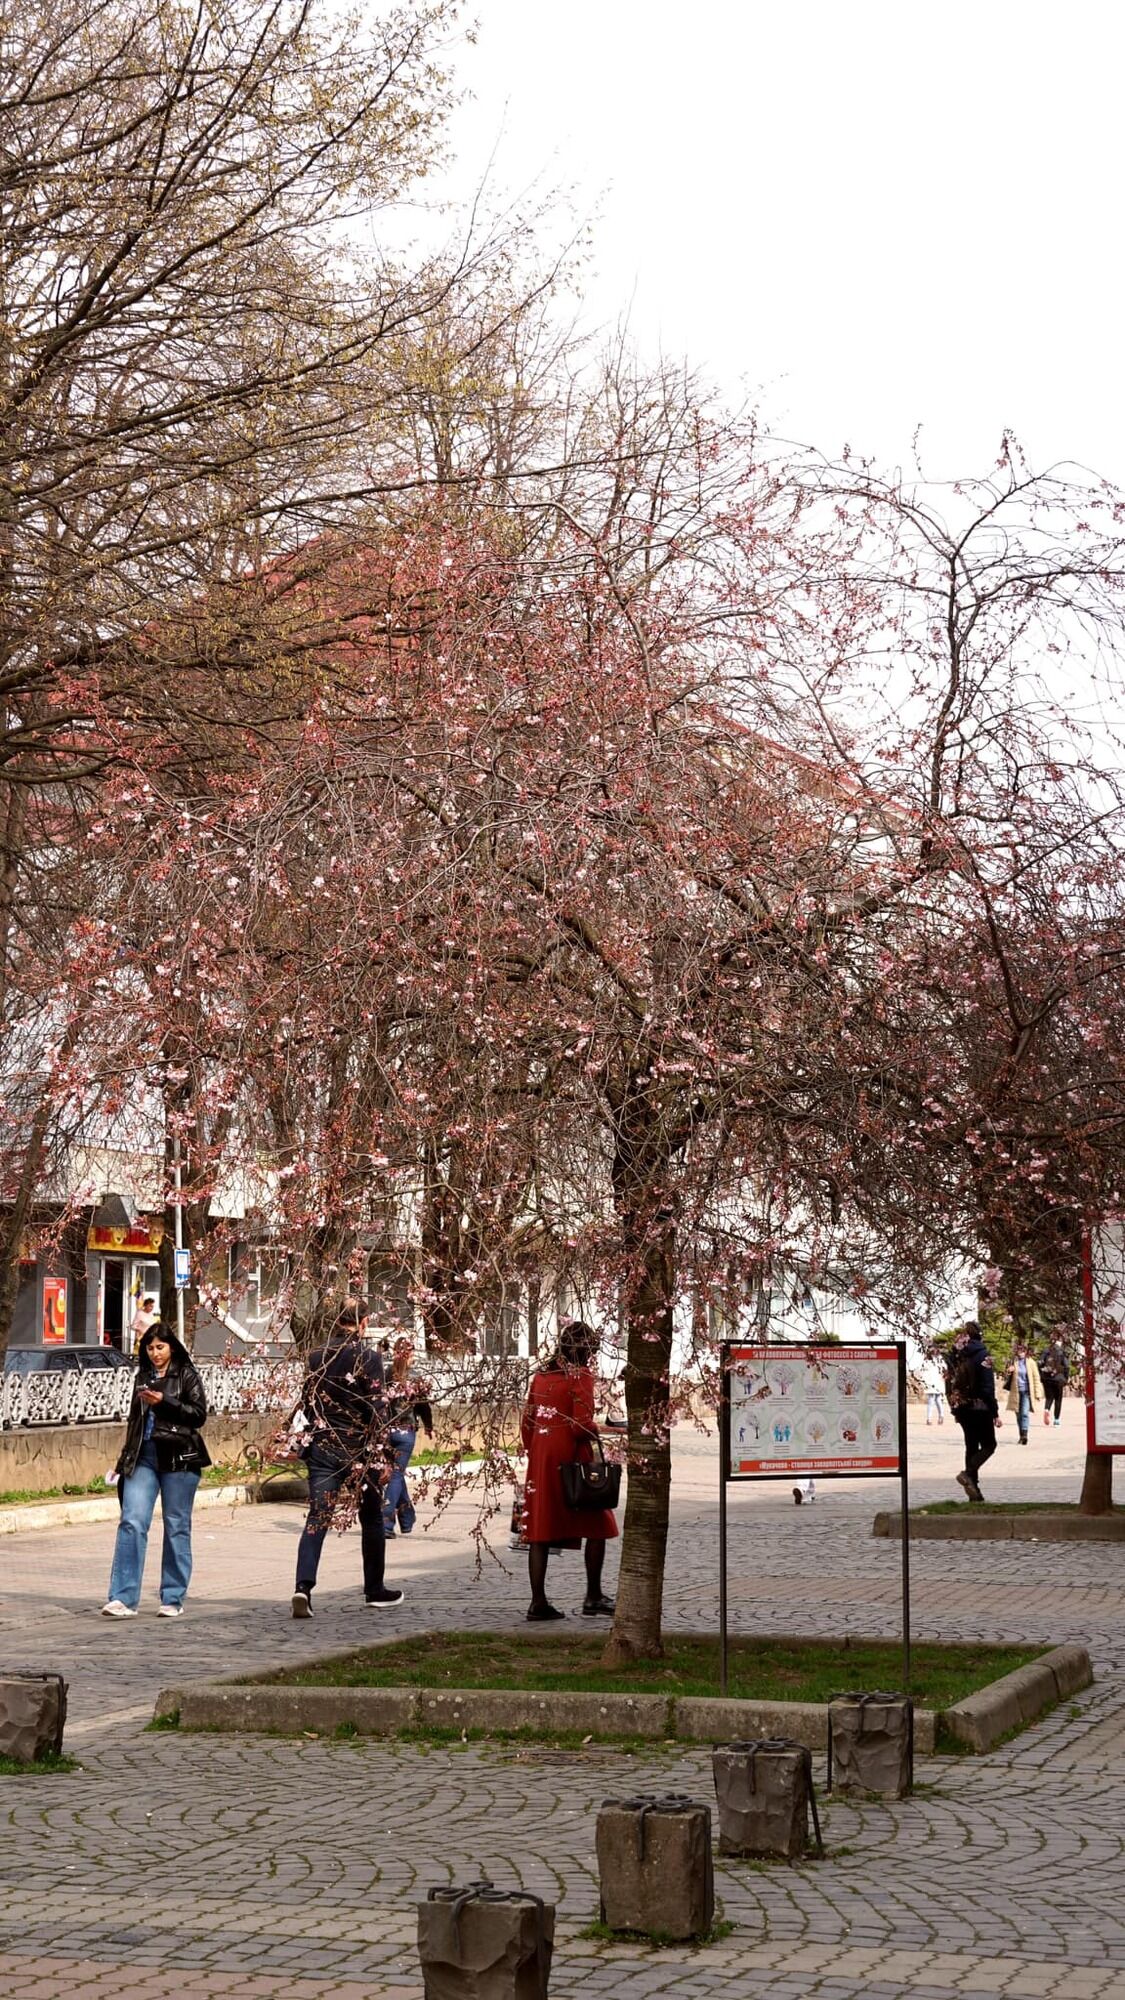 В Мукачево зацвела знаменитая "безумная сакура", которую называют визитной карточкой города. Фото